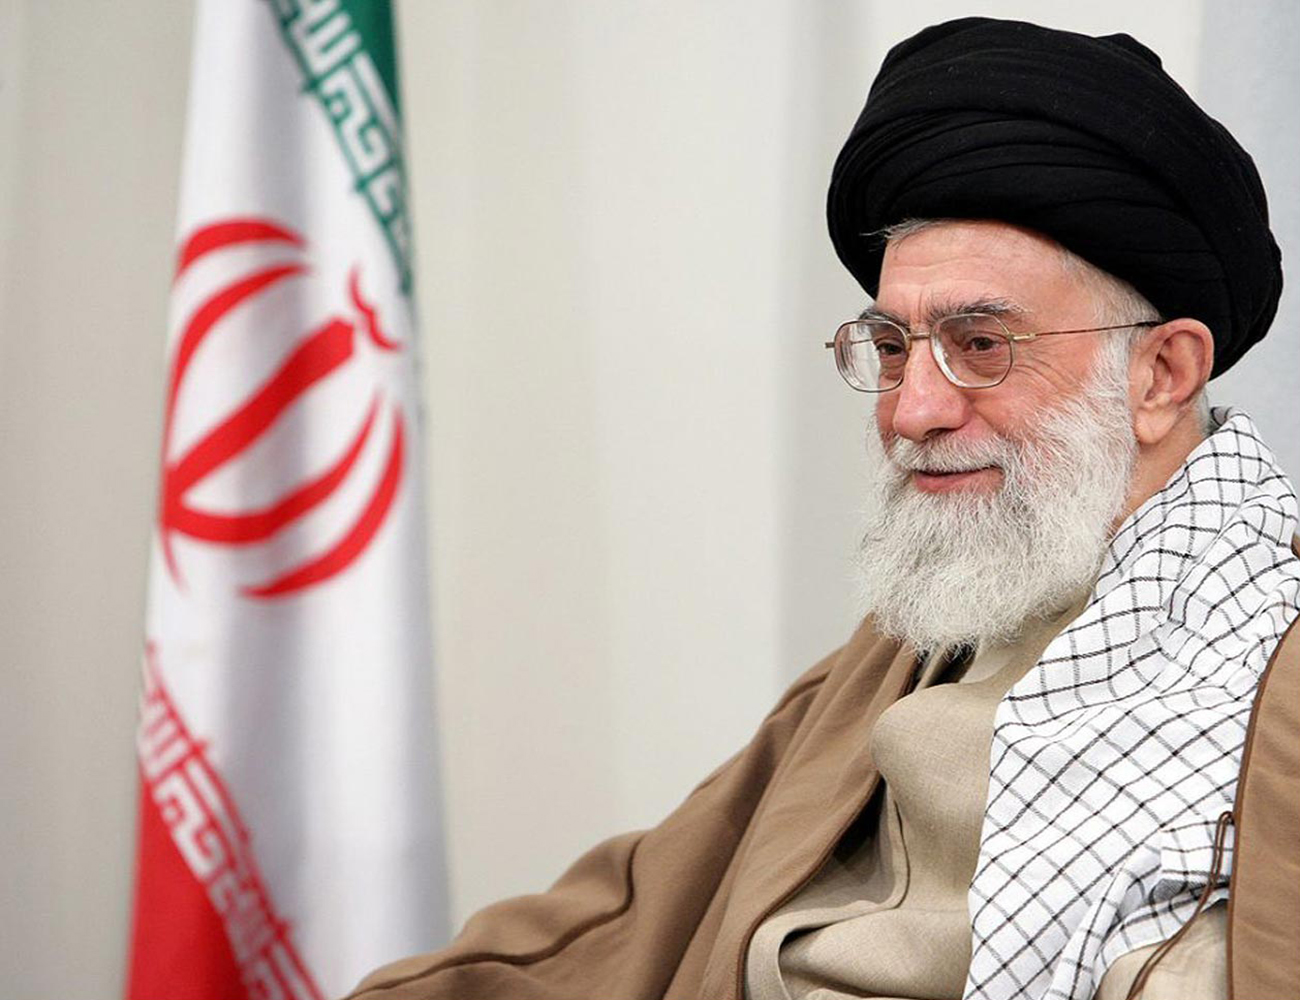 Washington puede unirse "al campo de los terroristas", segun Irán